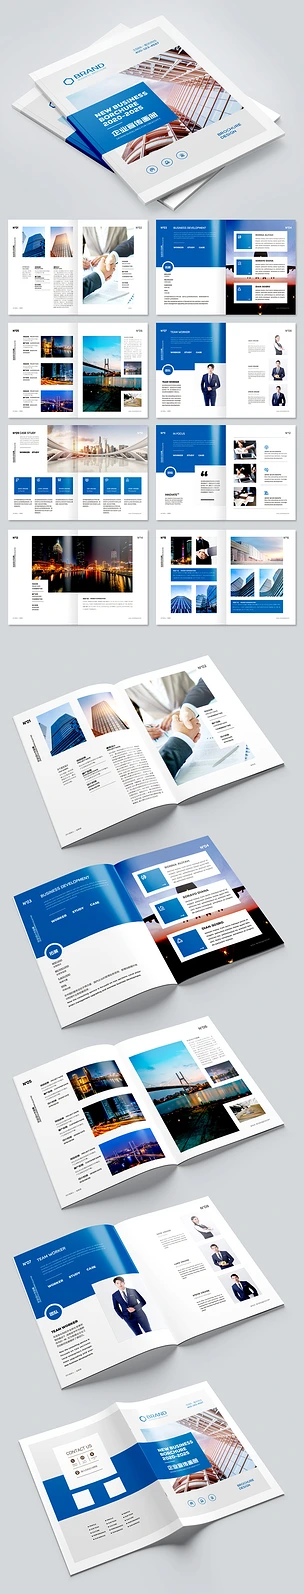 简约蓝色大气企业画册企业宣传册设计模板